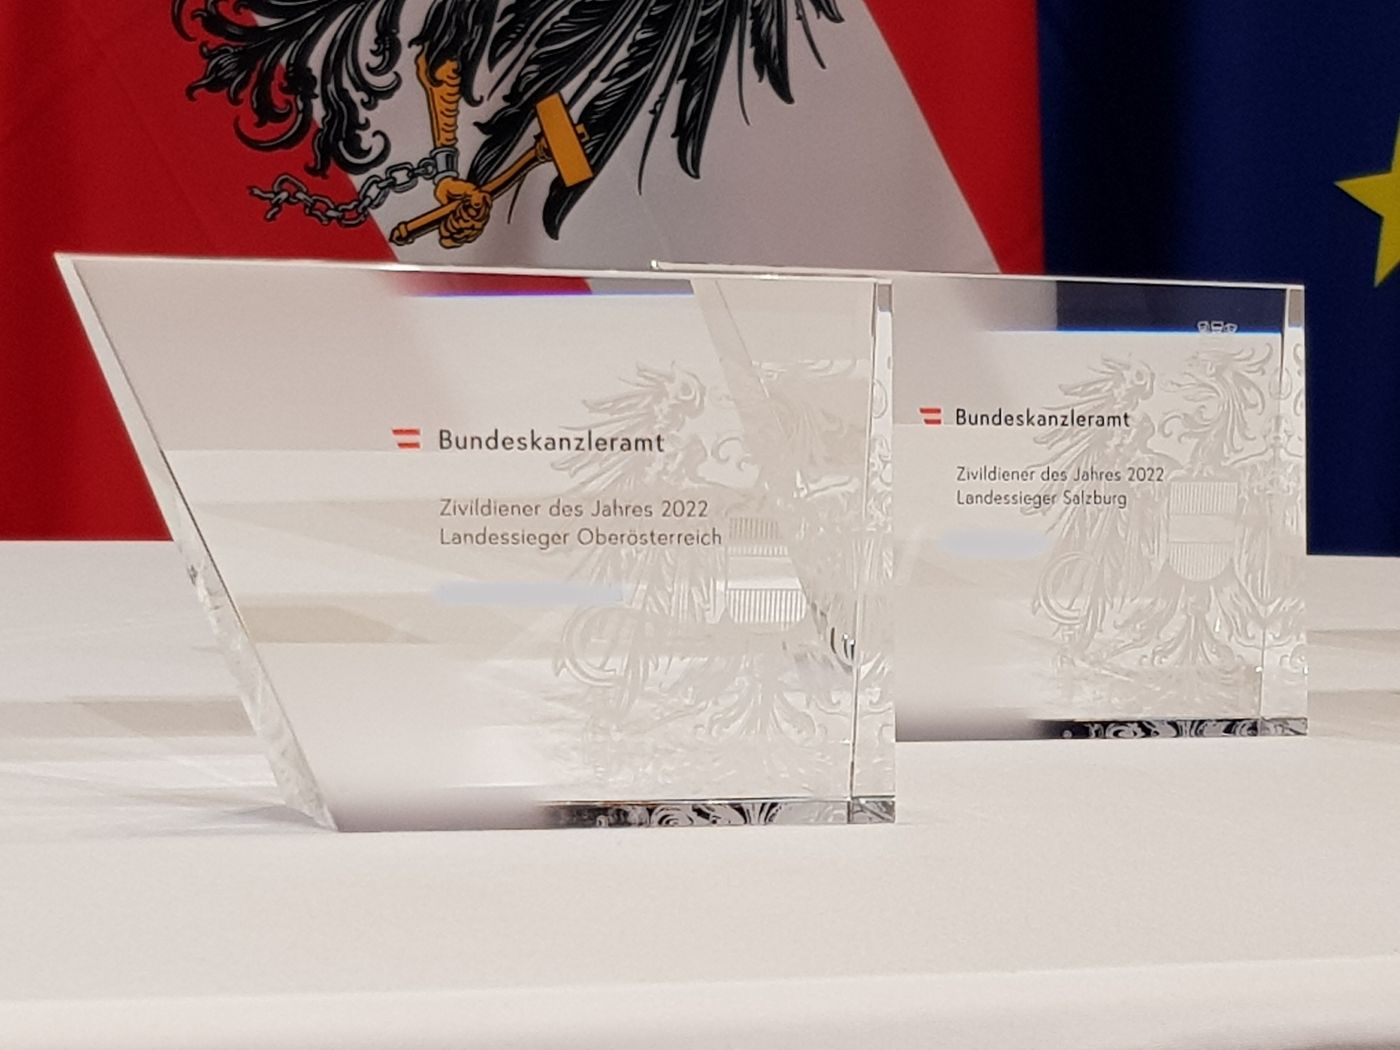 Zwei Glaspokale mit dem Aufdruck "Bundeskanzleramt" und "Zivildiener des Jahres 2022" Landessieger